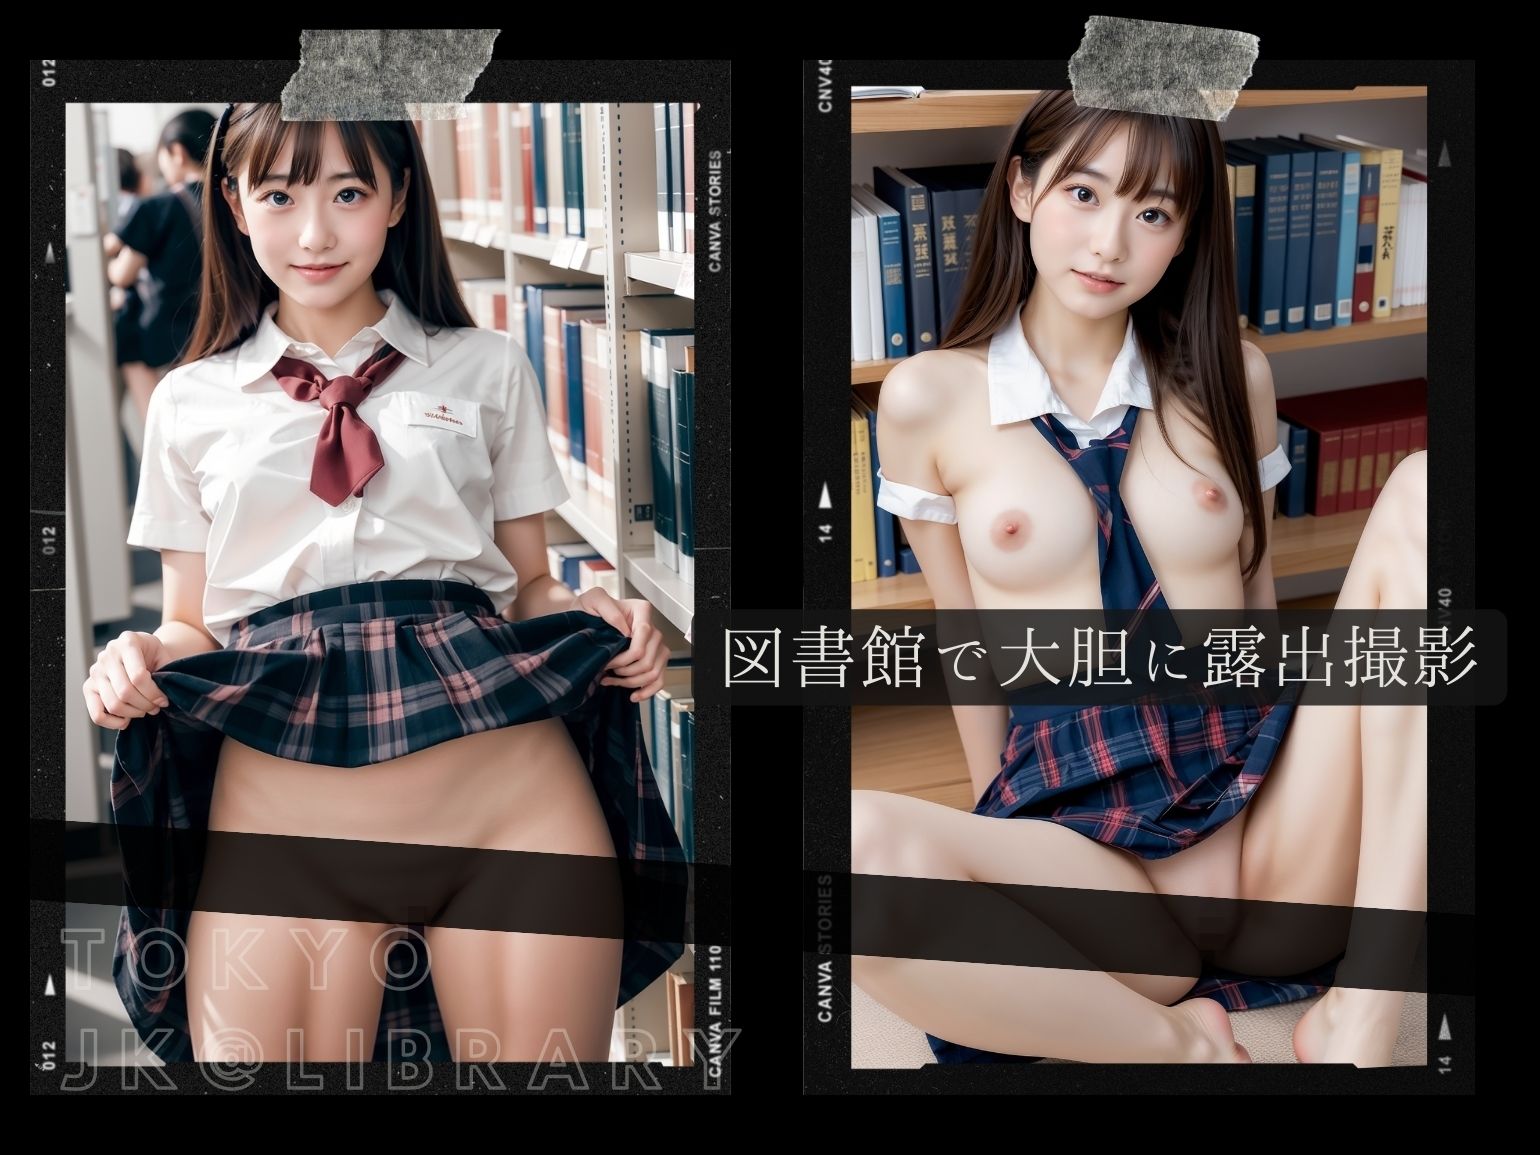 東京露出図書館 - 可愛すぎるJKの露出セックス2